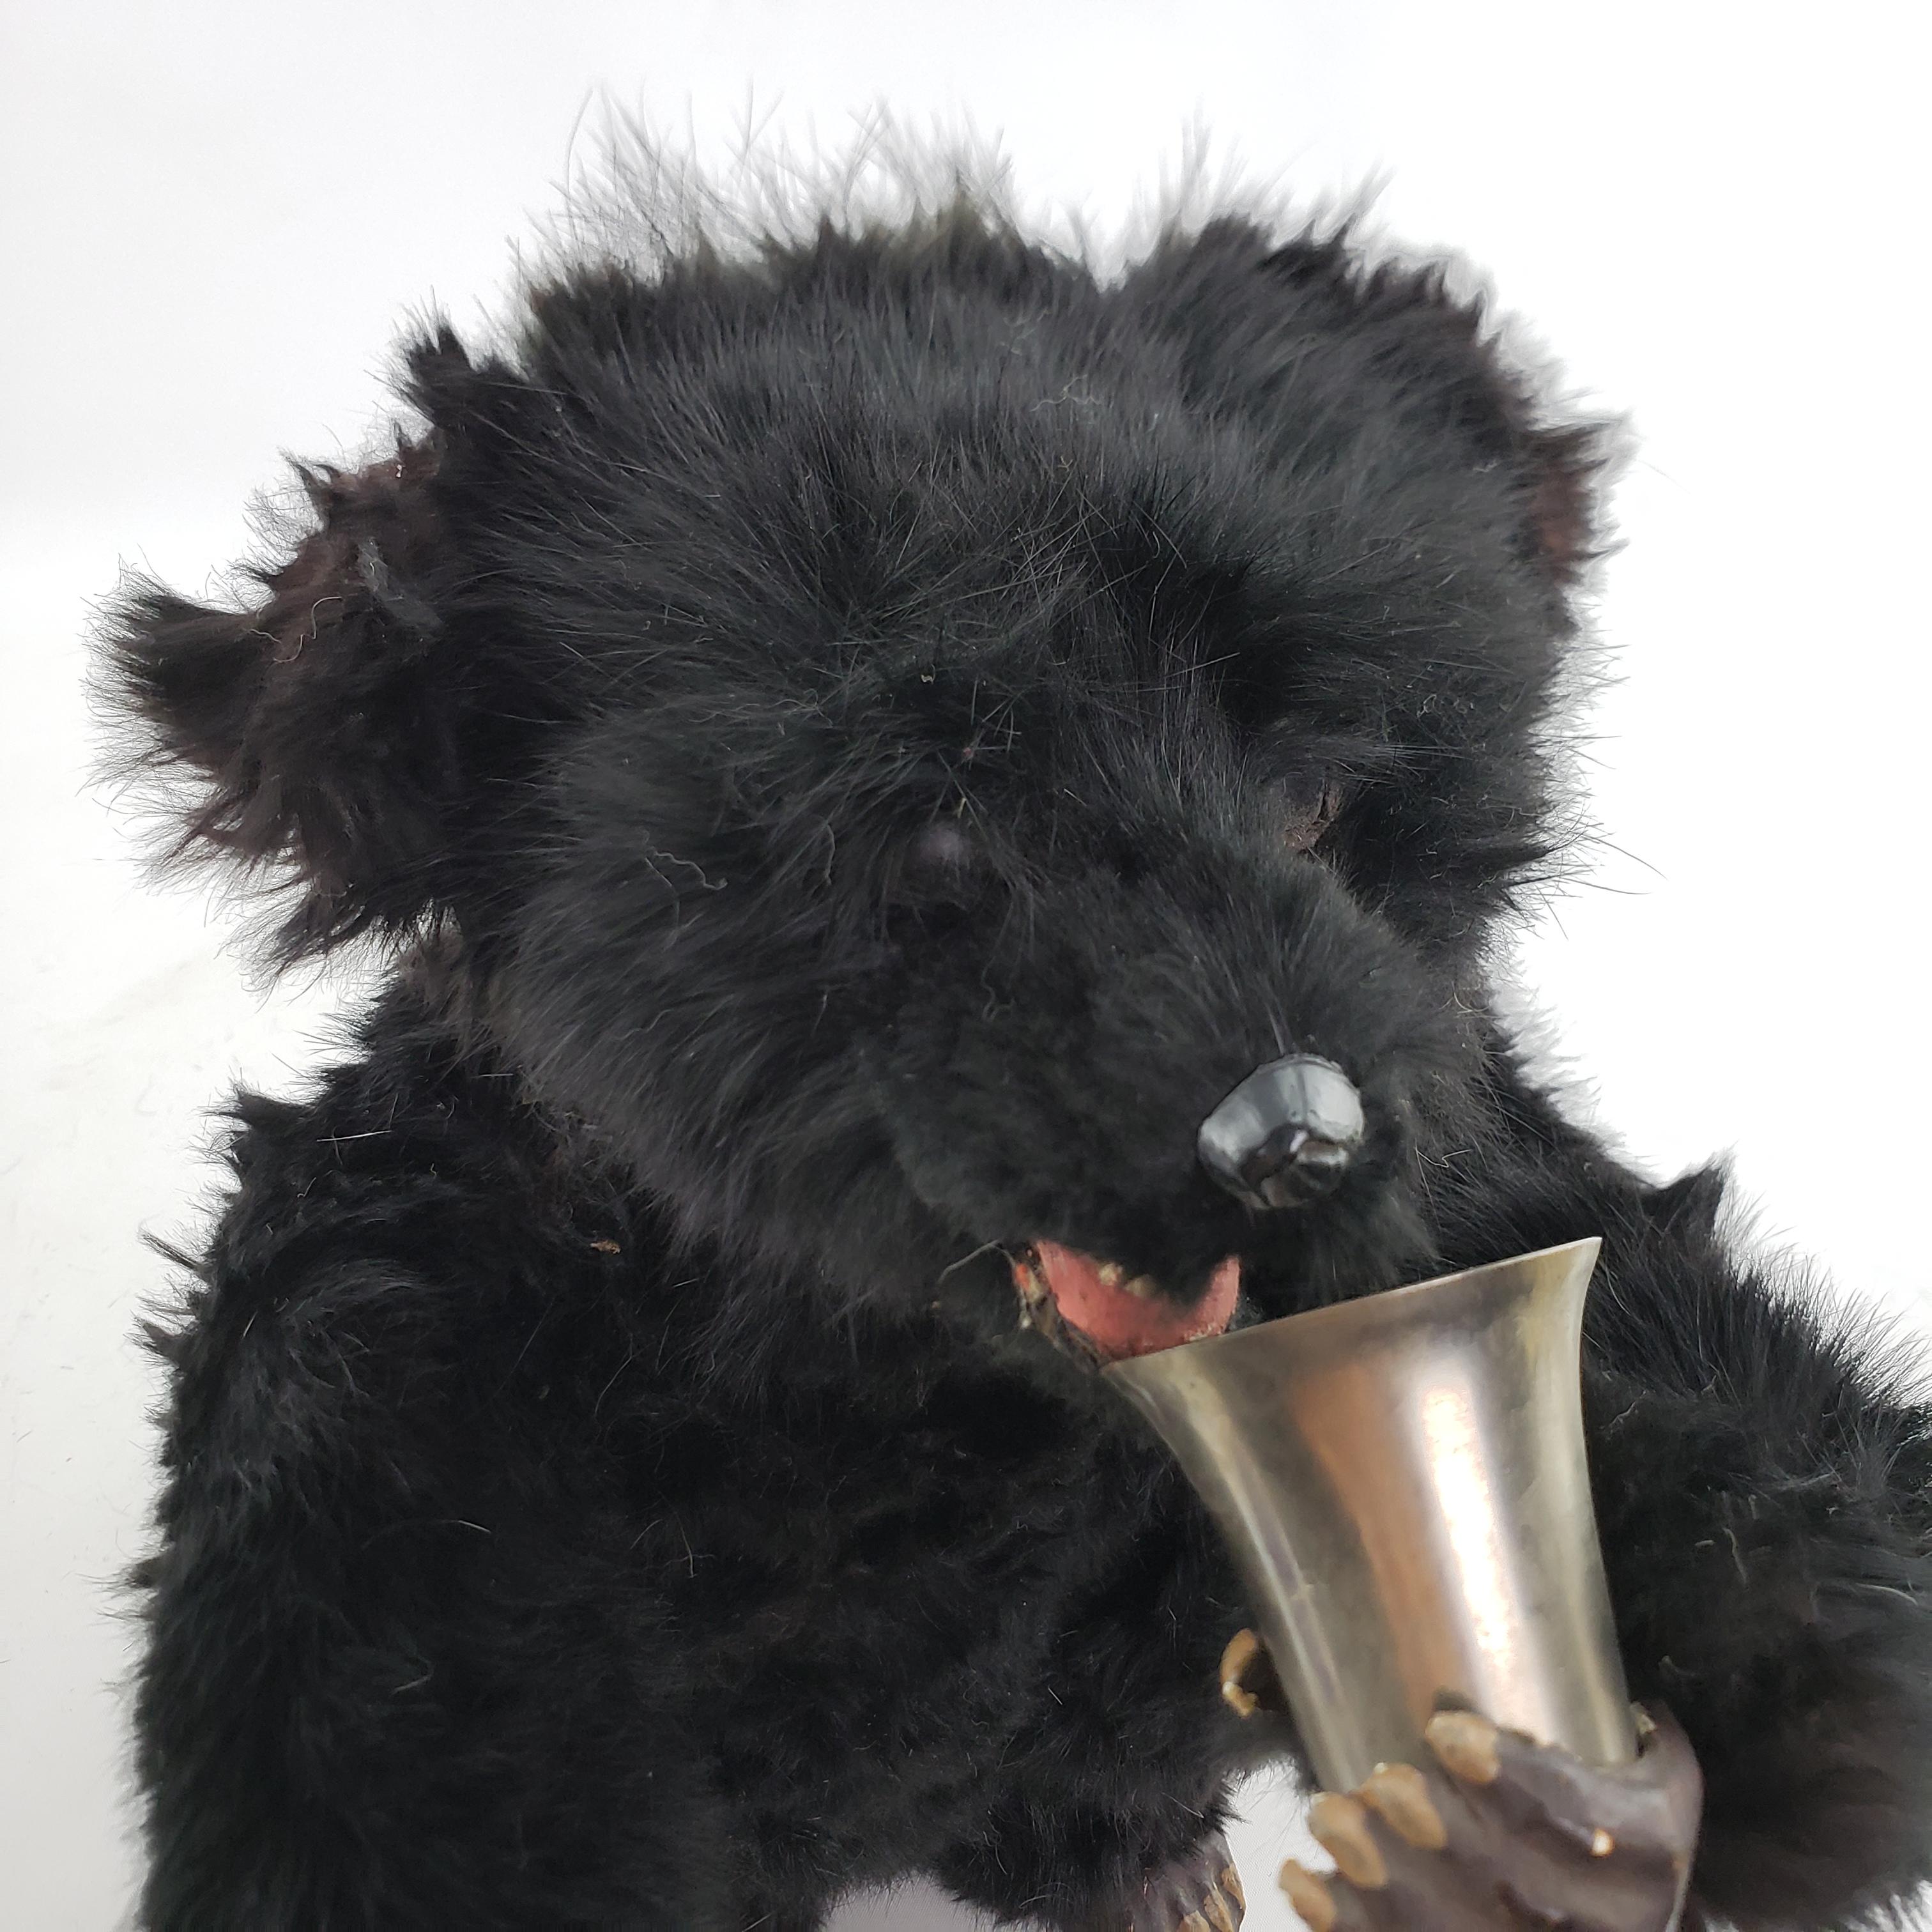 Grand jouet d'enfant en forme d'ours noir à remontage mécanique à clé victorien ancien, trouvé en vente 5